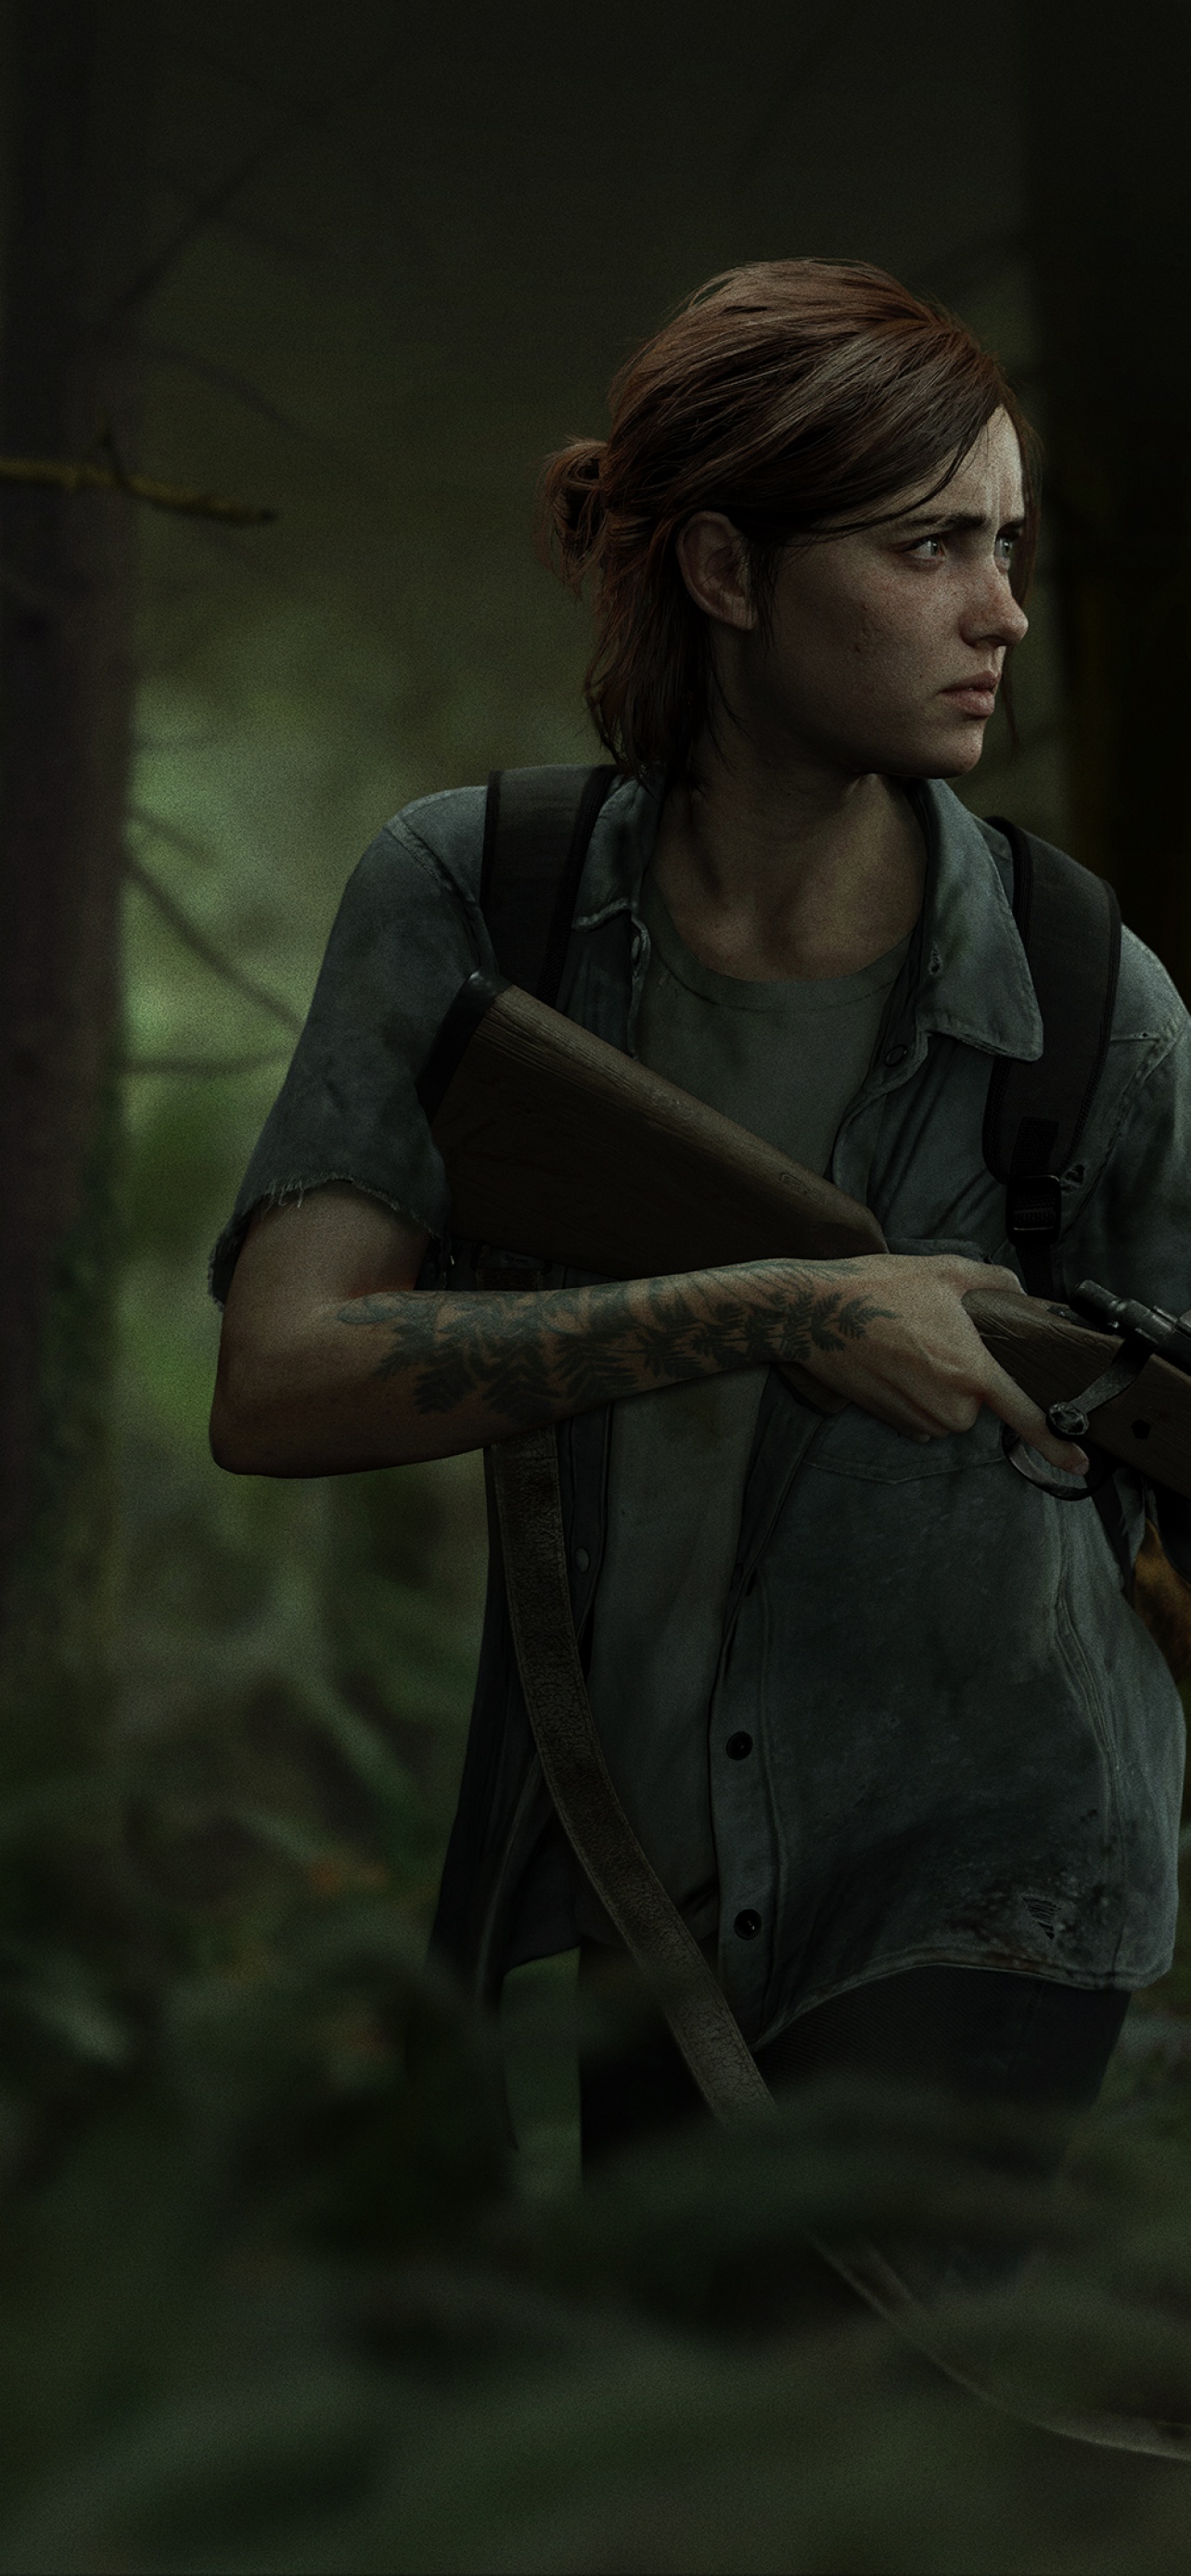 Ellie The Last of Us Wallpaper  The last of us, Best gaming wallpapers, 4k  desktop wallpapers